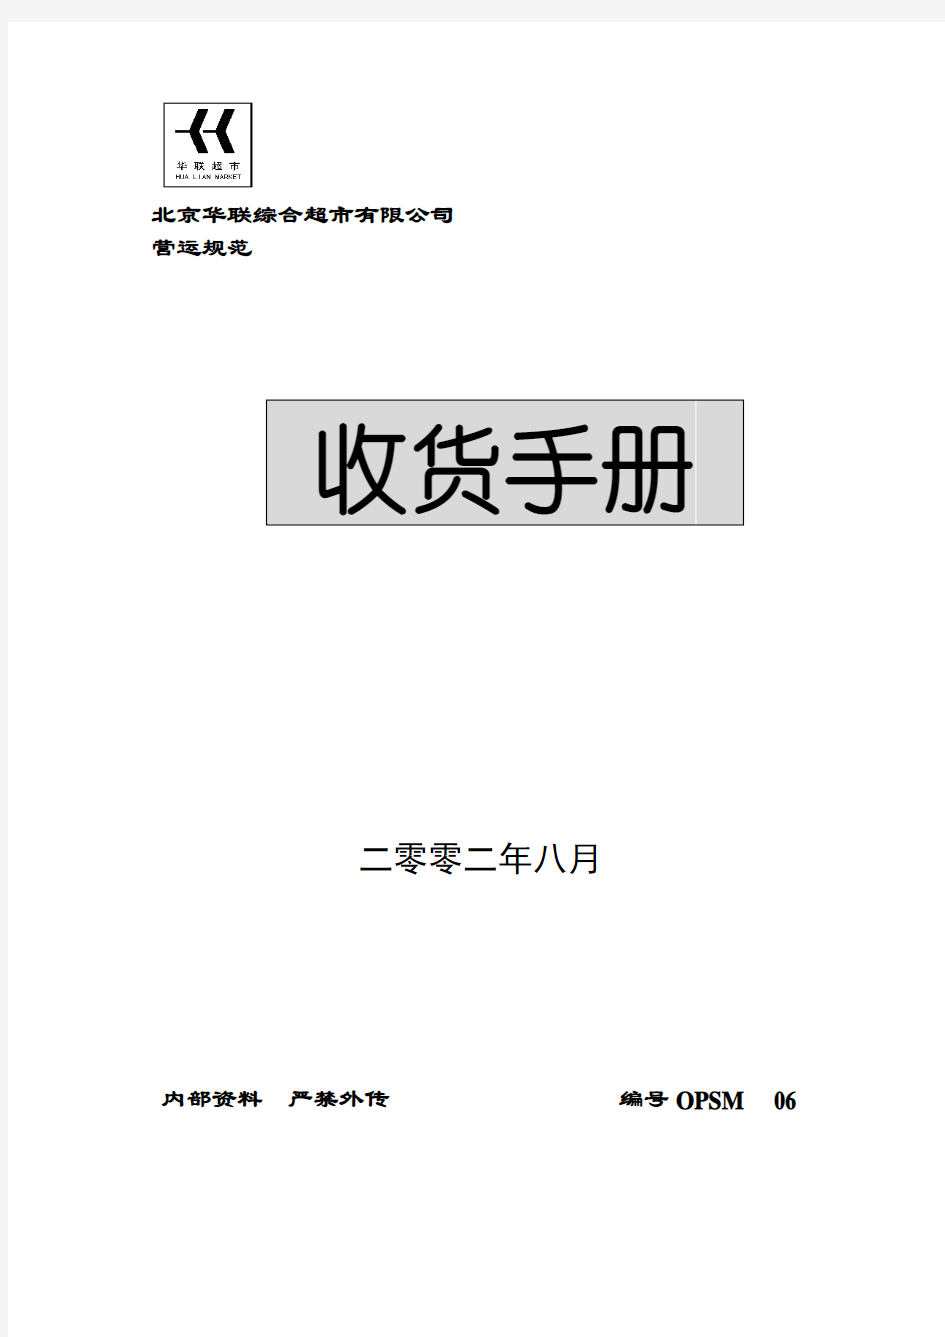 北京华联综合超市收货手册(DOC-44页)资料